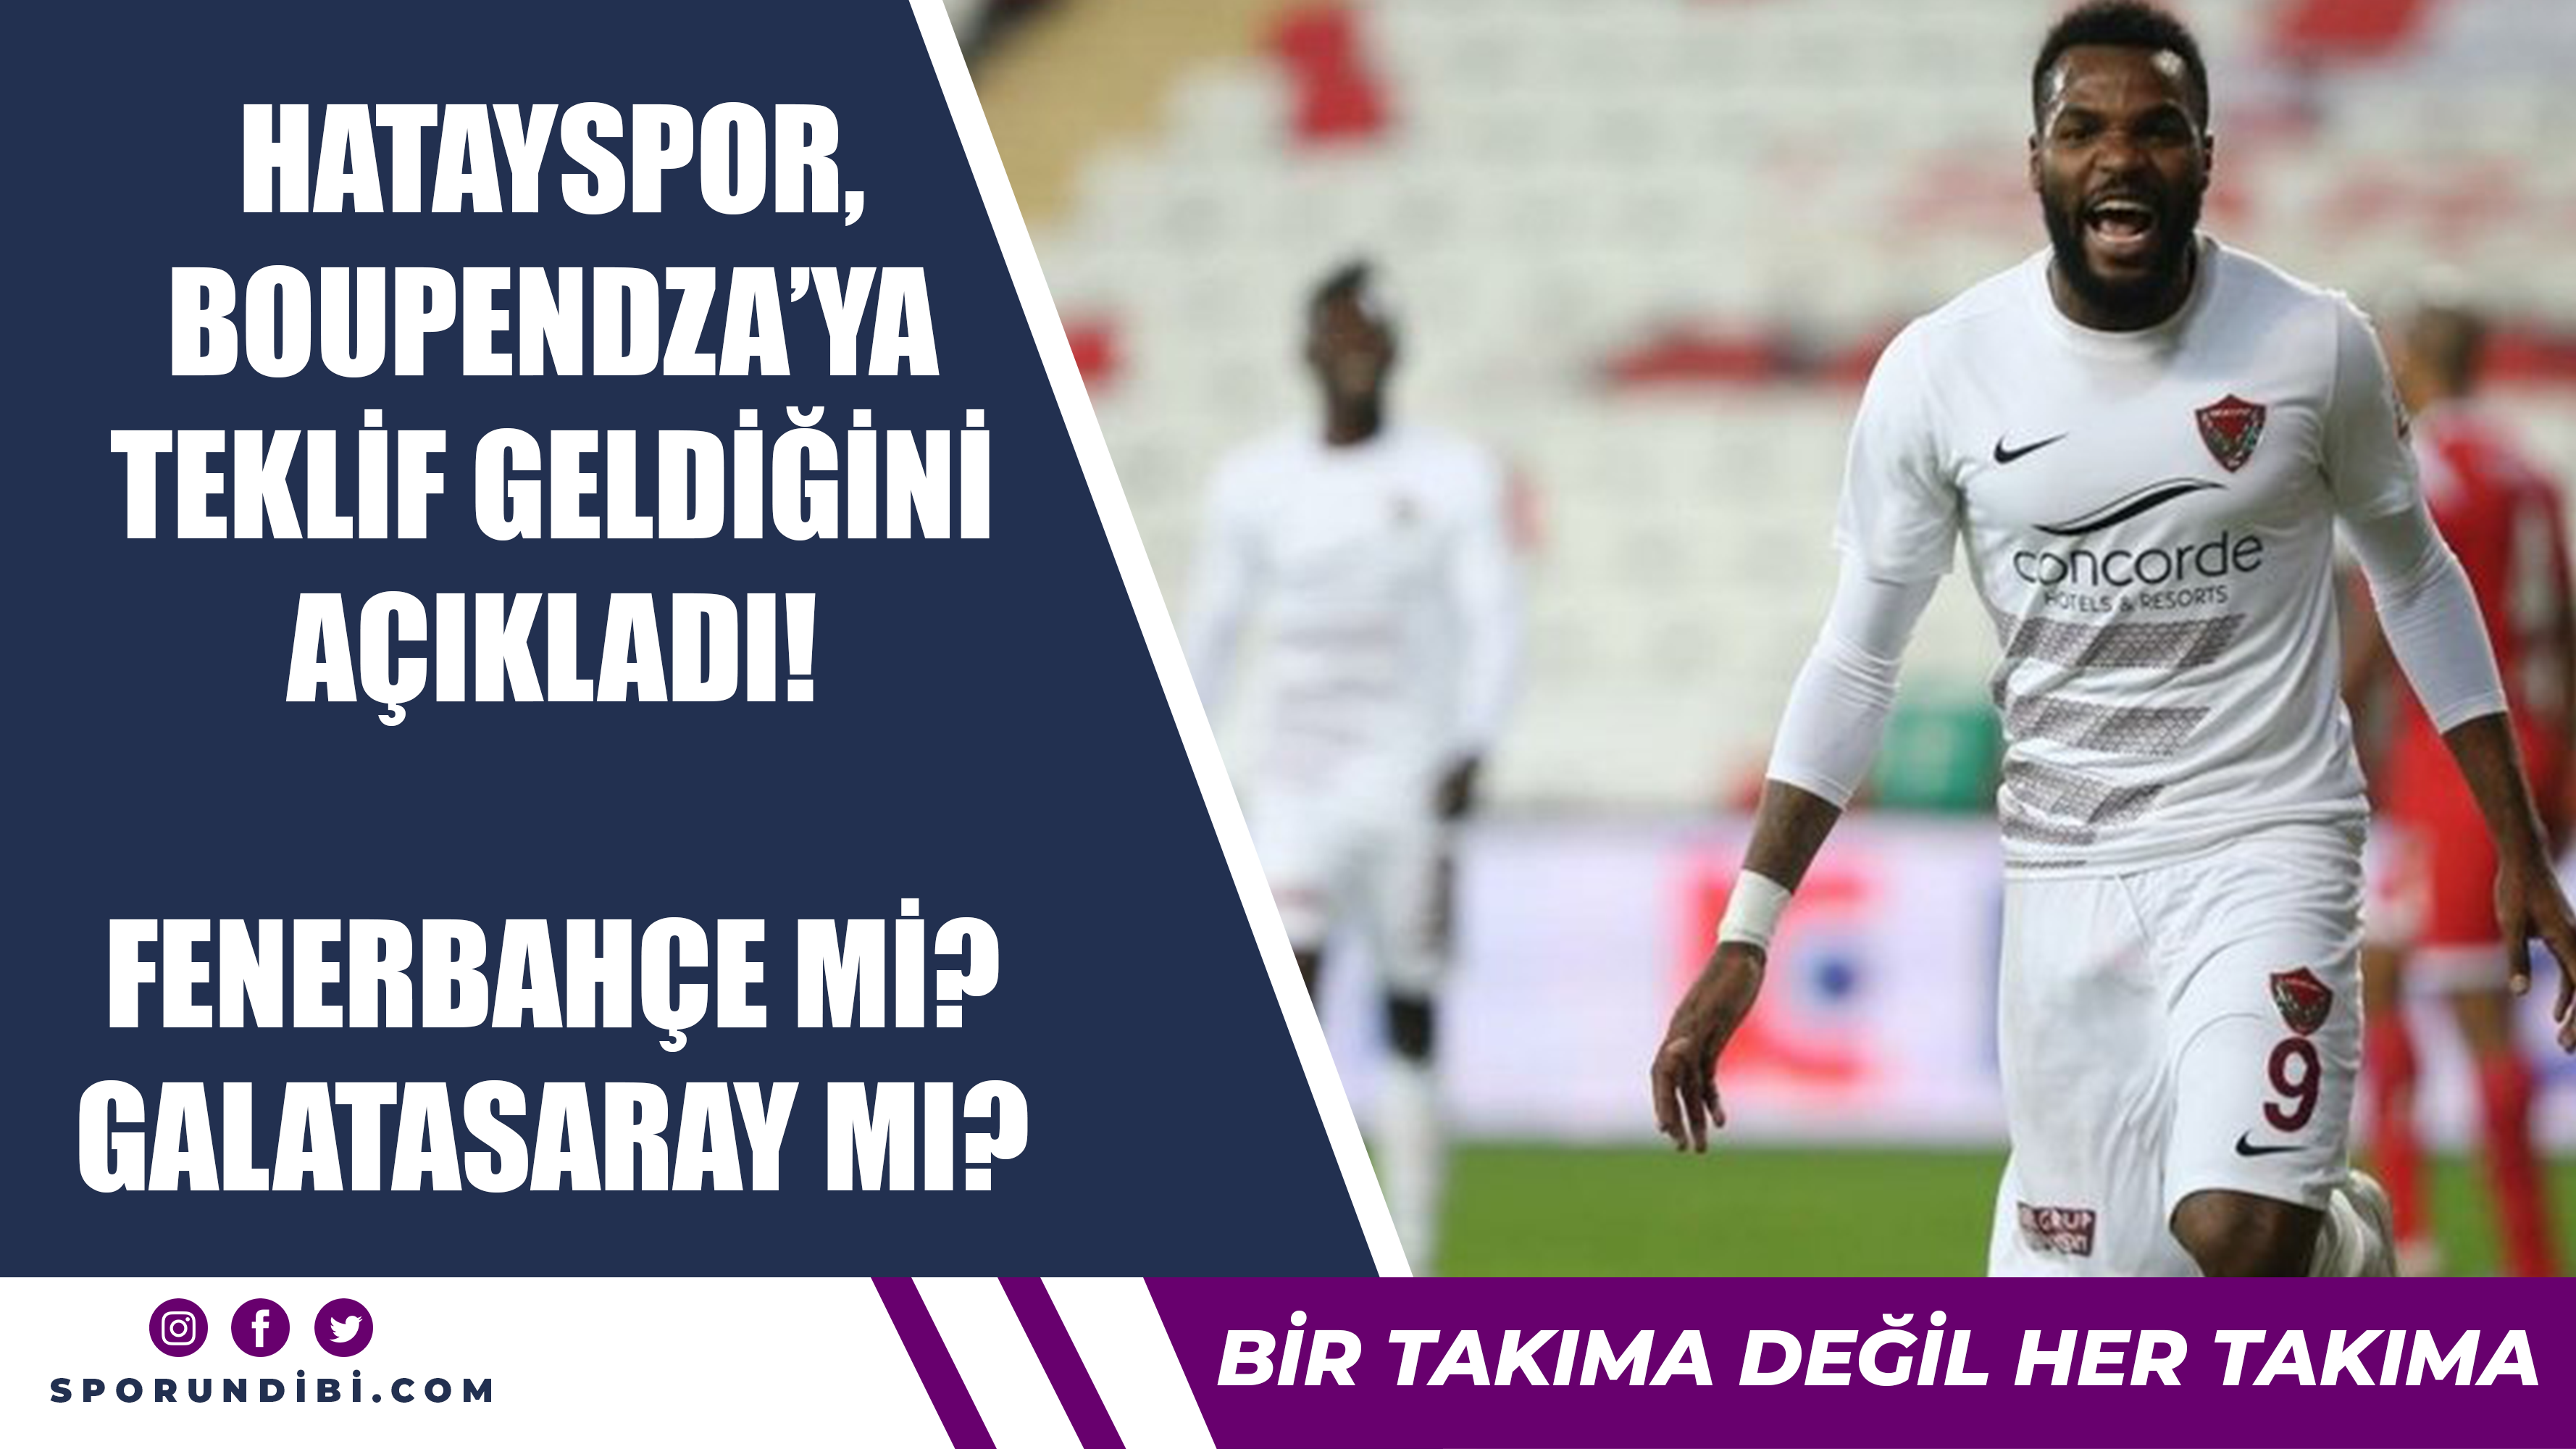 Hatayspor, Boupendza'ya teklif geldiğini açıkladı! Fenerbahçe mi? Galatasaray mı?